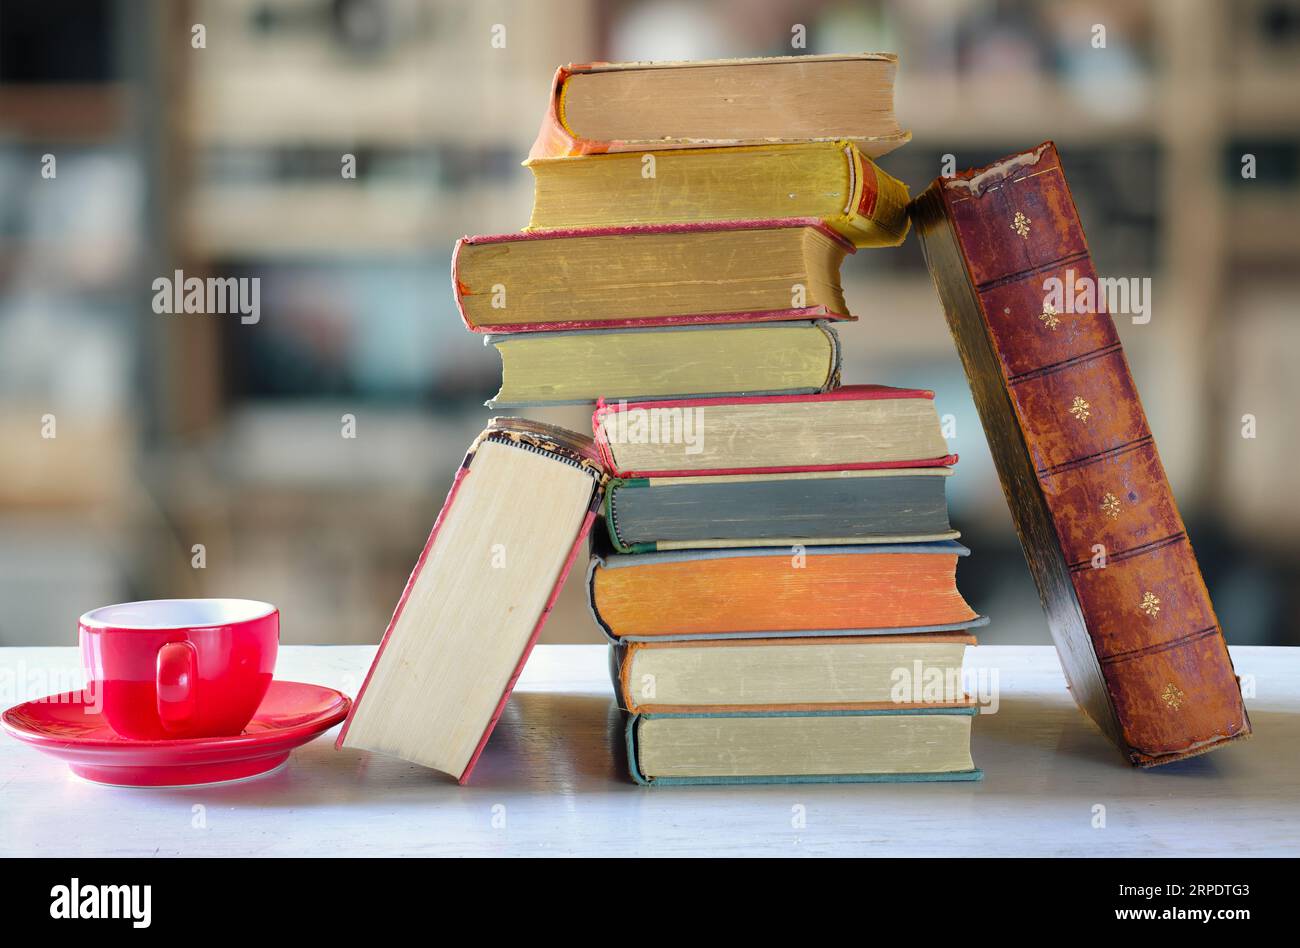 Stapel von Büchern mit verschwommenem Buchregal-Hintergrund, Buchmesse, Entspannung, Lesen, Lernen, Bildung oder Home Office-Konzept Stockfoto